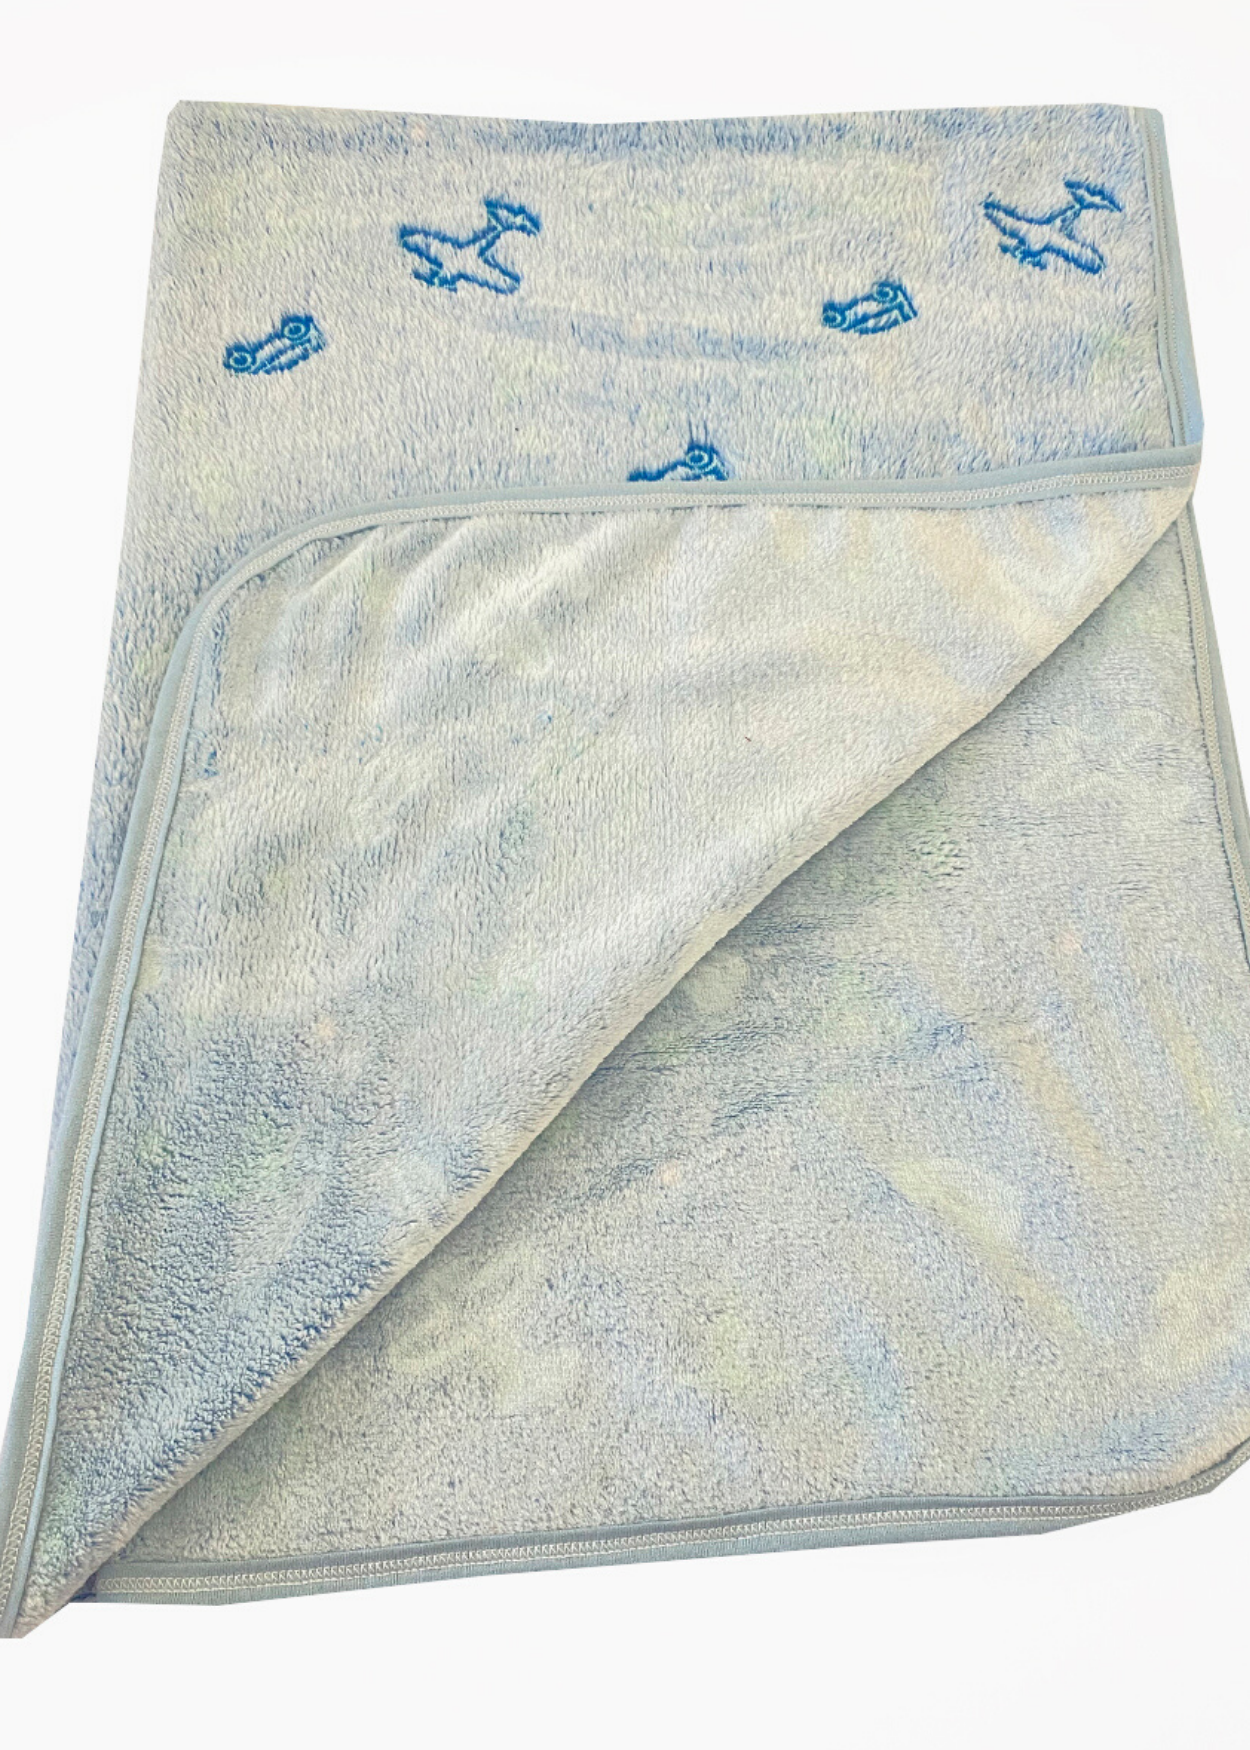 manta de bebe plush 110cm x 80 cm aconchego no frio coberto dupla face quentinho - 3